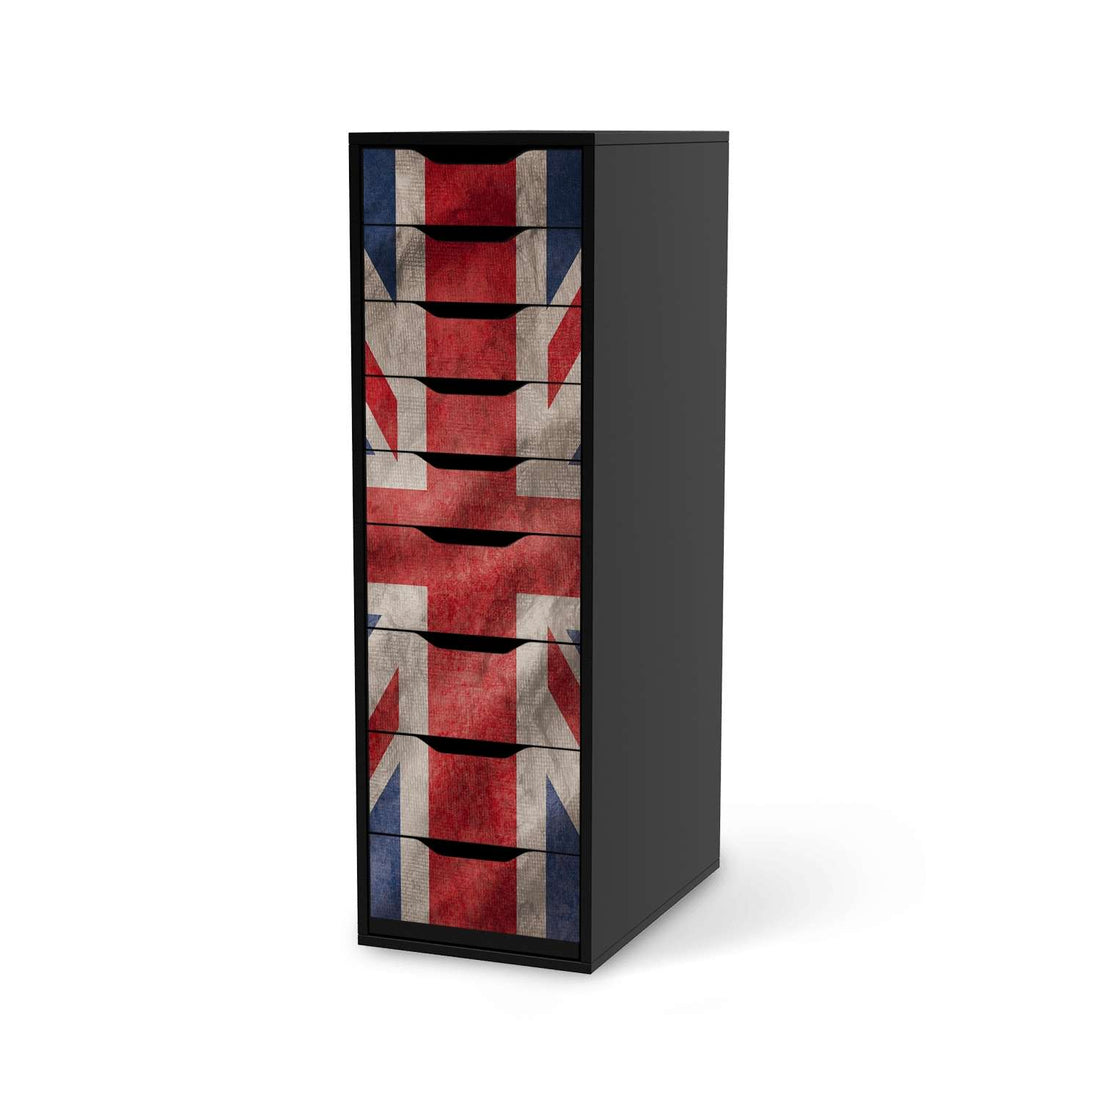 Folie für Möbel Union Jack - IKEA Alex 9 Schubladen - schwarz